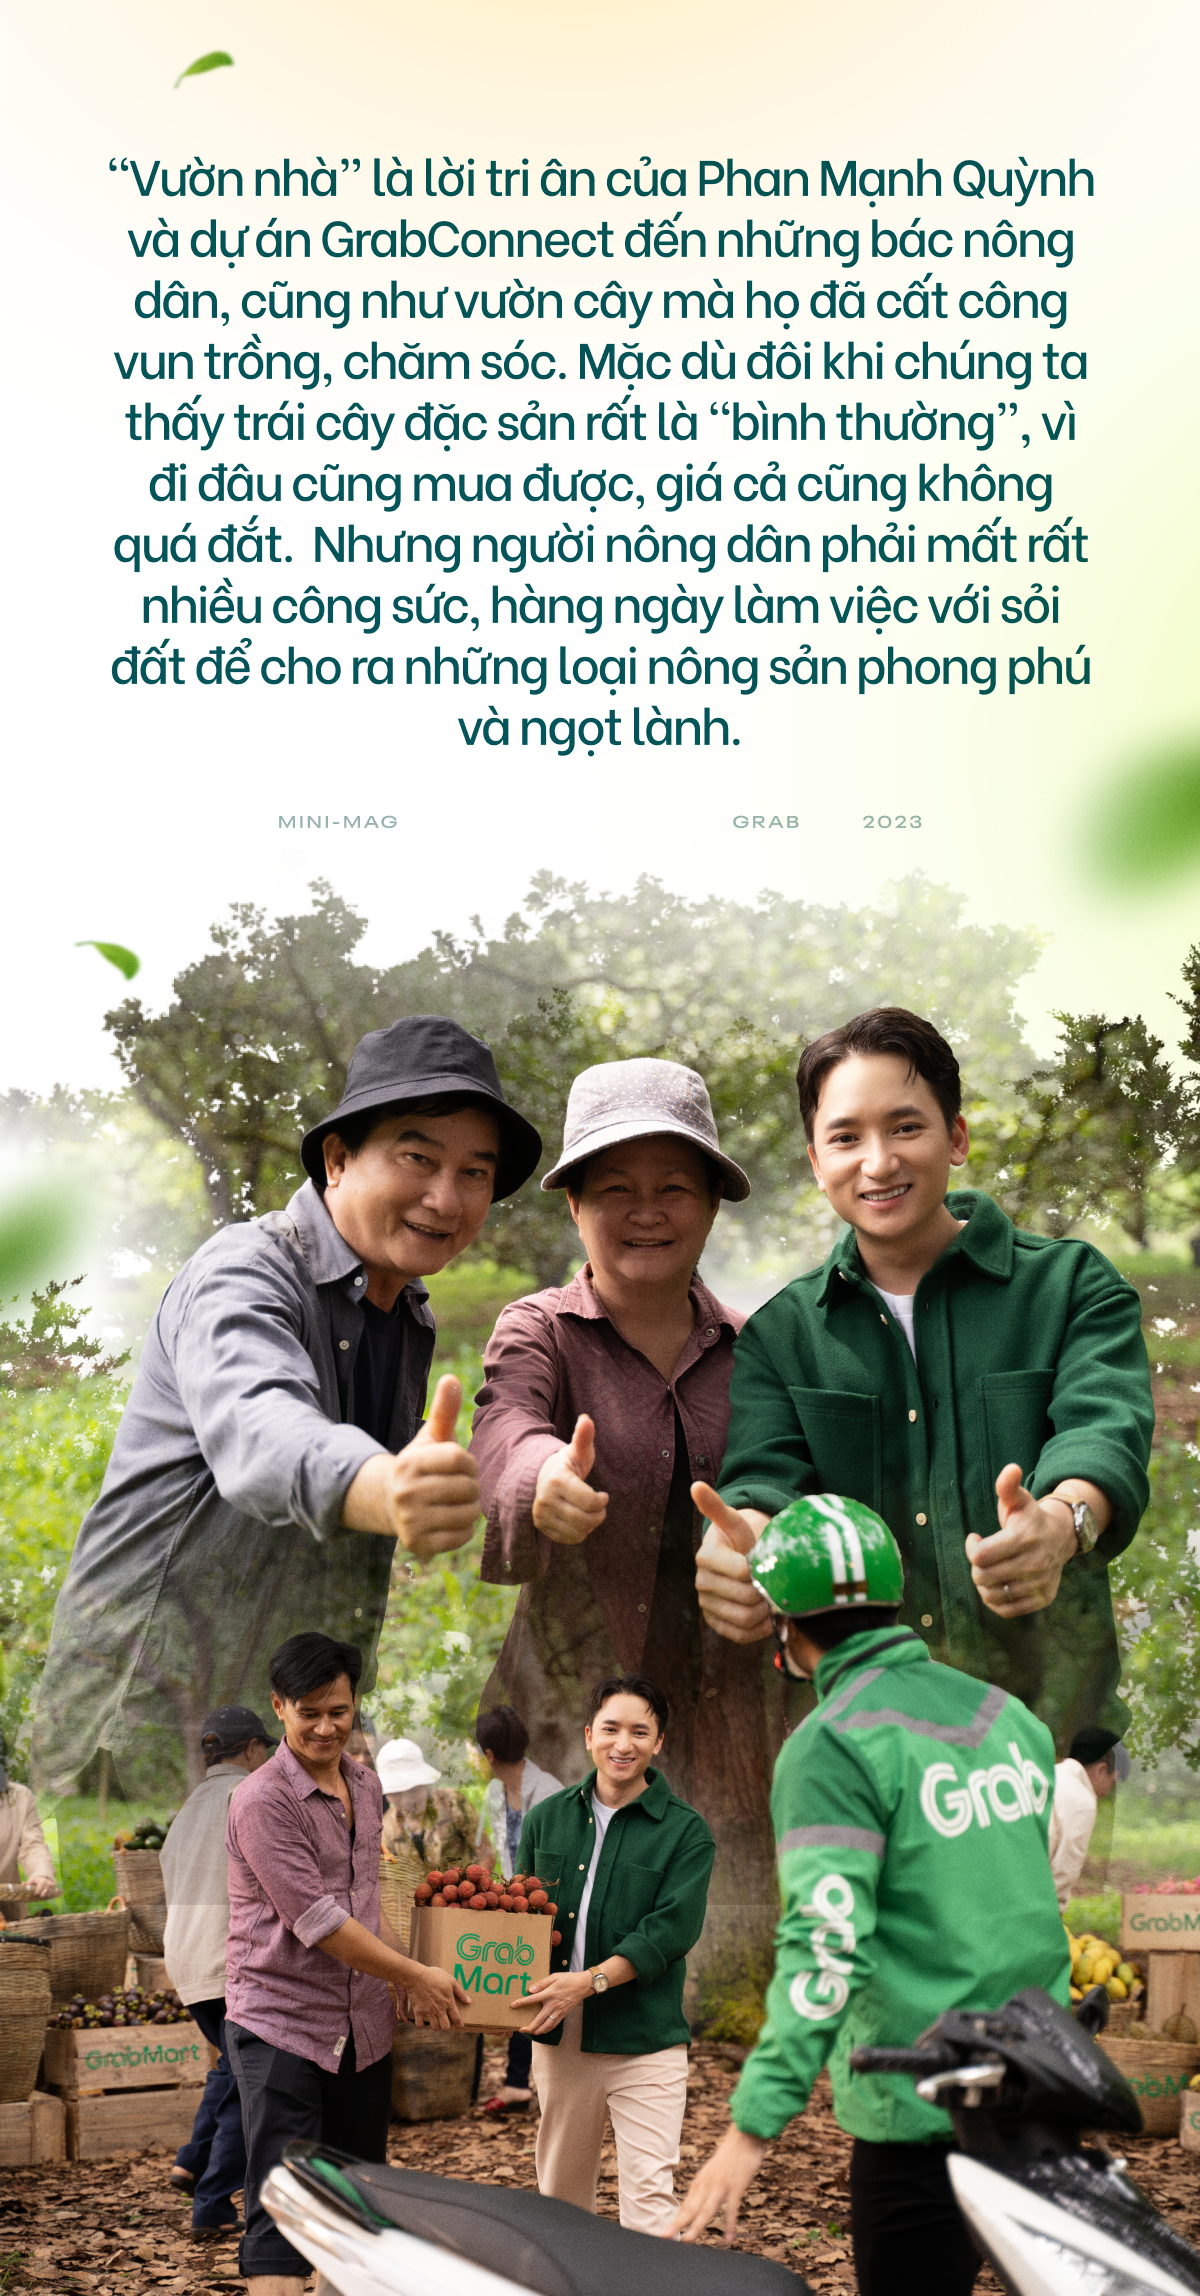 Bồi hồi với Vườn Nhà - Bài hát đầu tiên Phan Mạnh Quỳnh sáng tác về người nông dân - Ảnh 4.